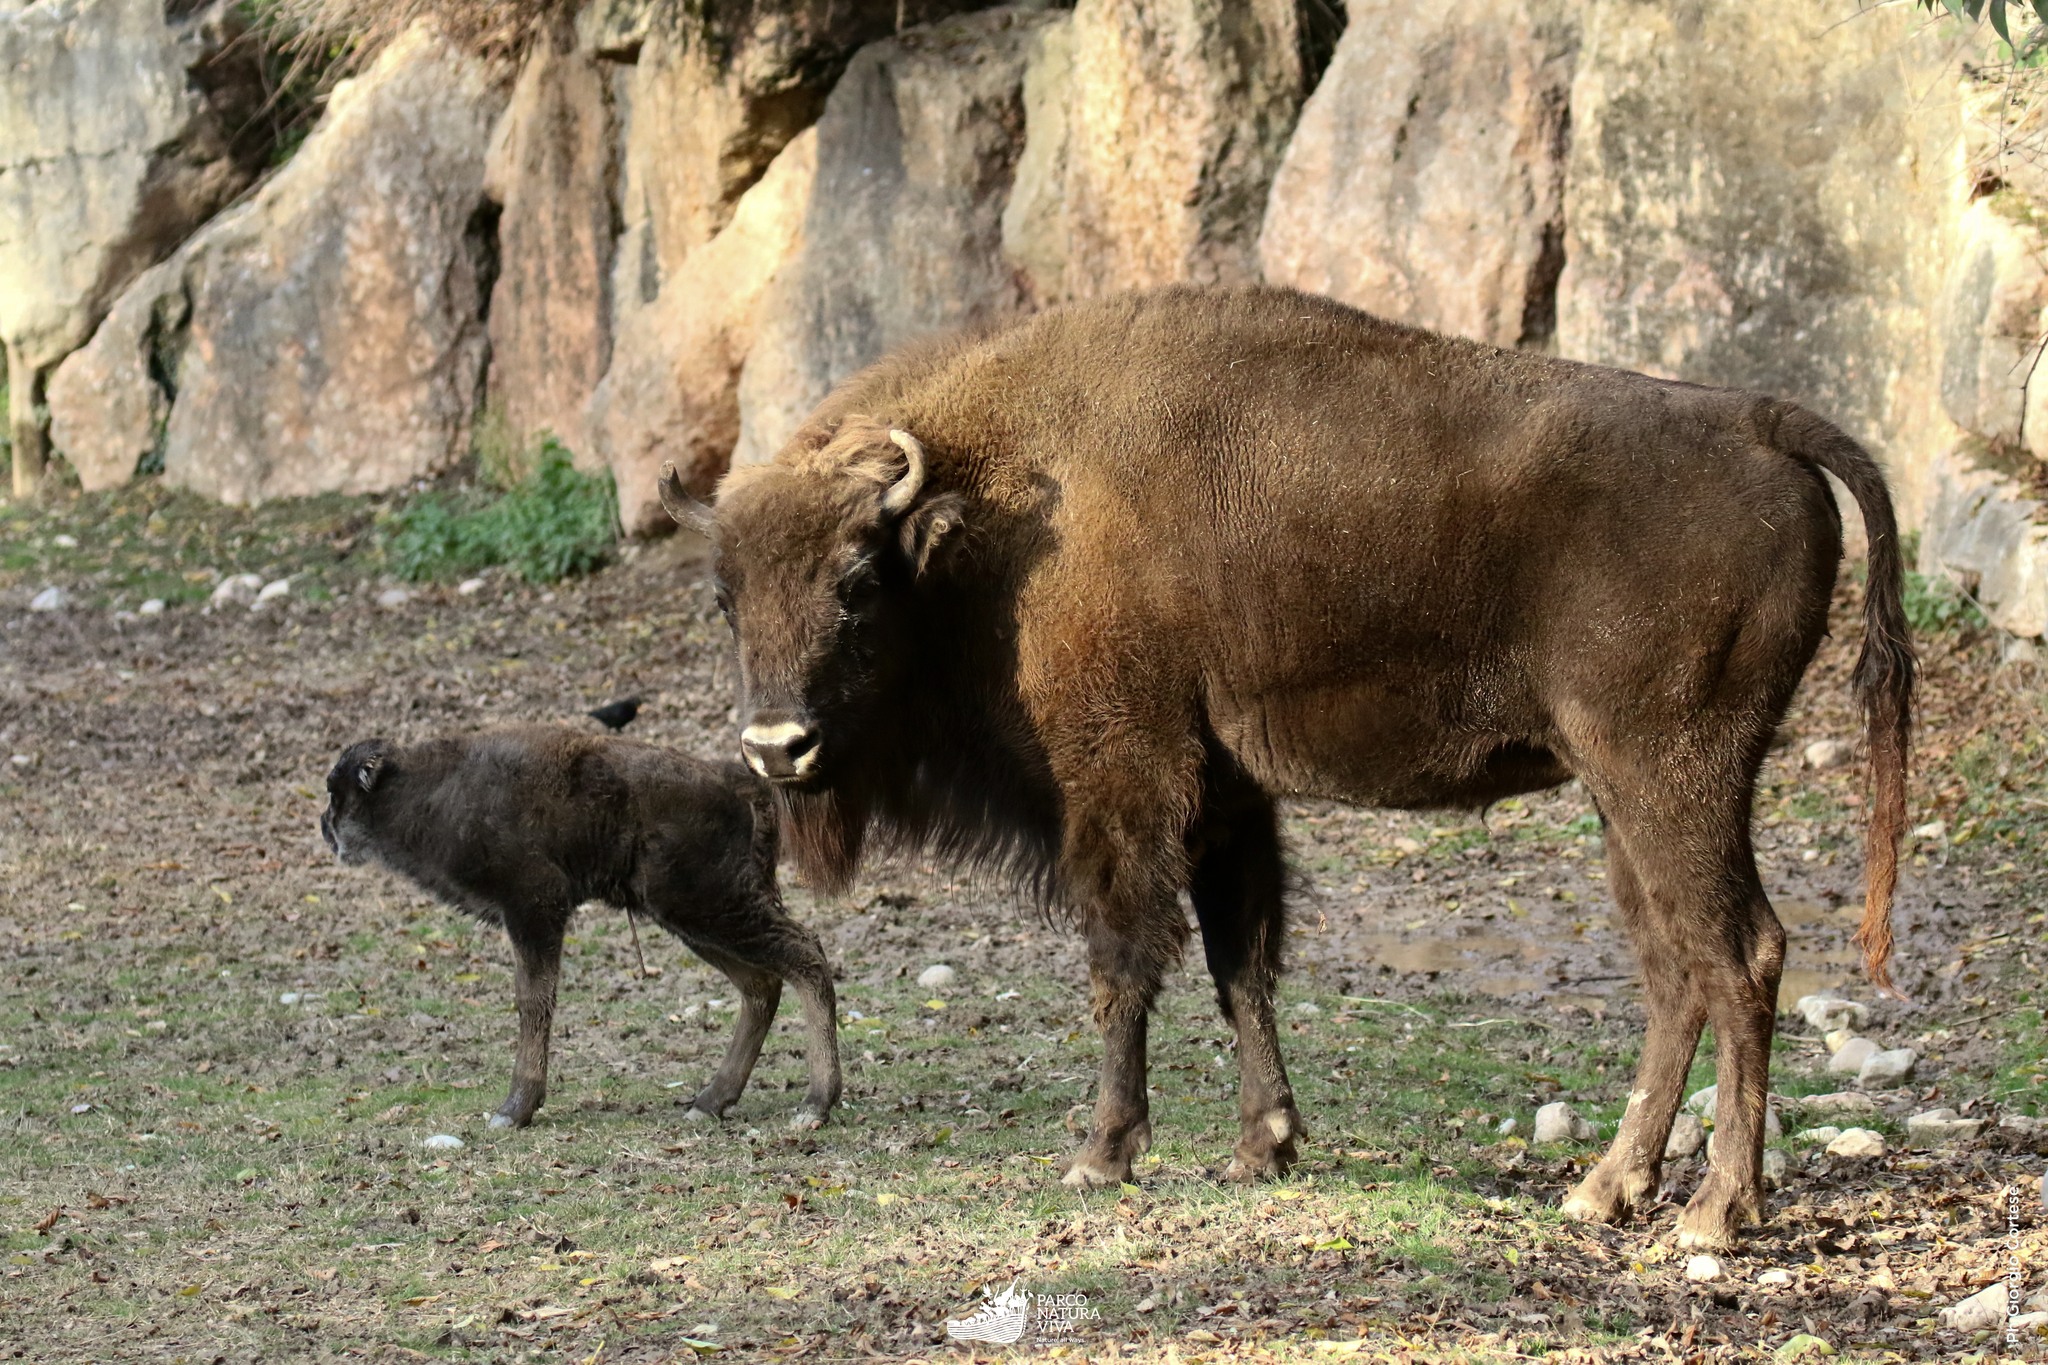 Eracle, der kleine europäische Bison, Sohn von Penelope und Zeus, wurde im Parco Natura Viva geboren